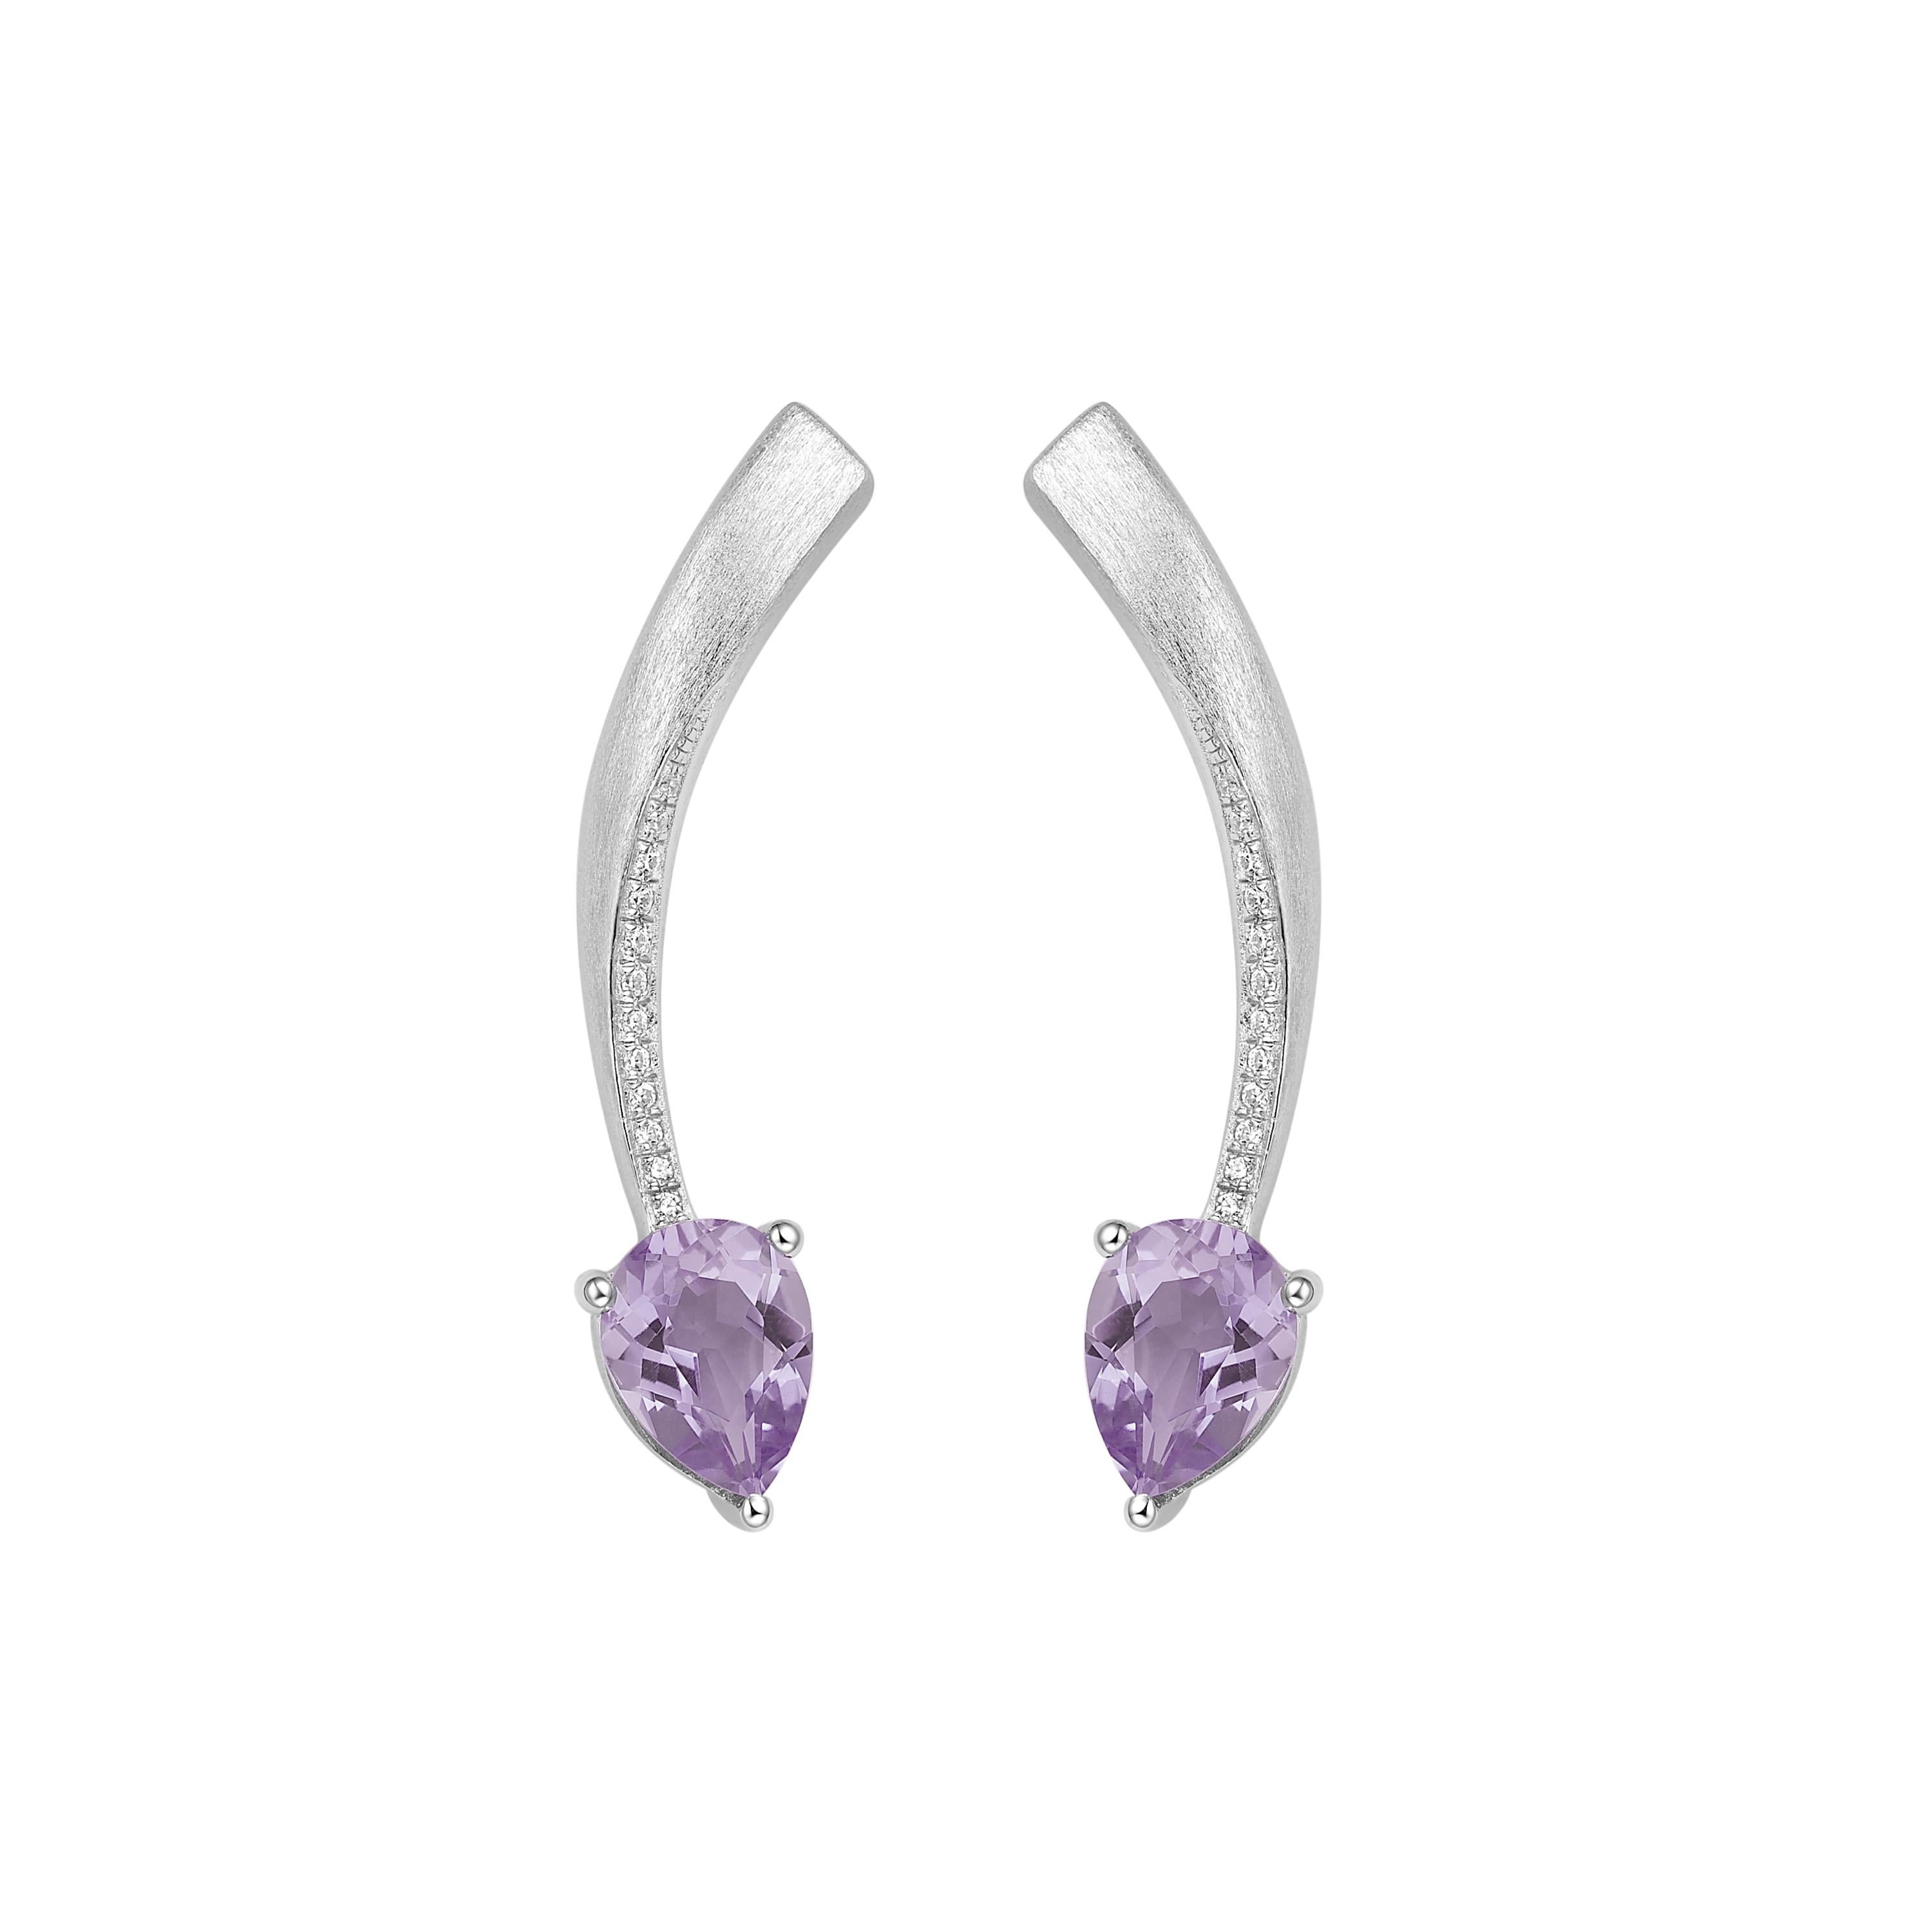 Pear Cut Fei Liu Purple Amtheyst Cubic Zirconia Sterling Silver Two-Piece Drop Earrings